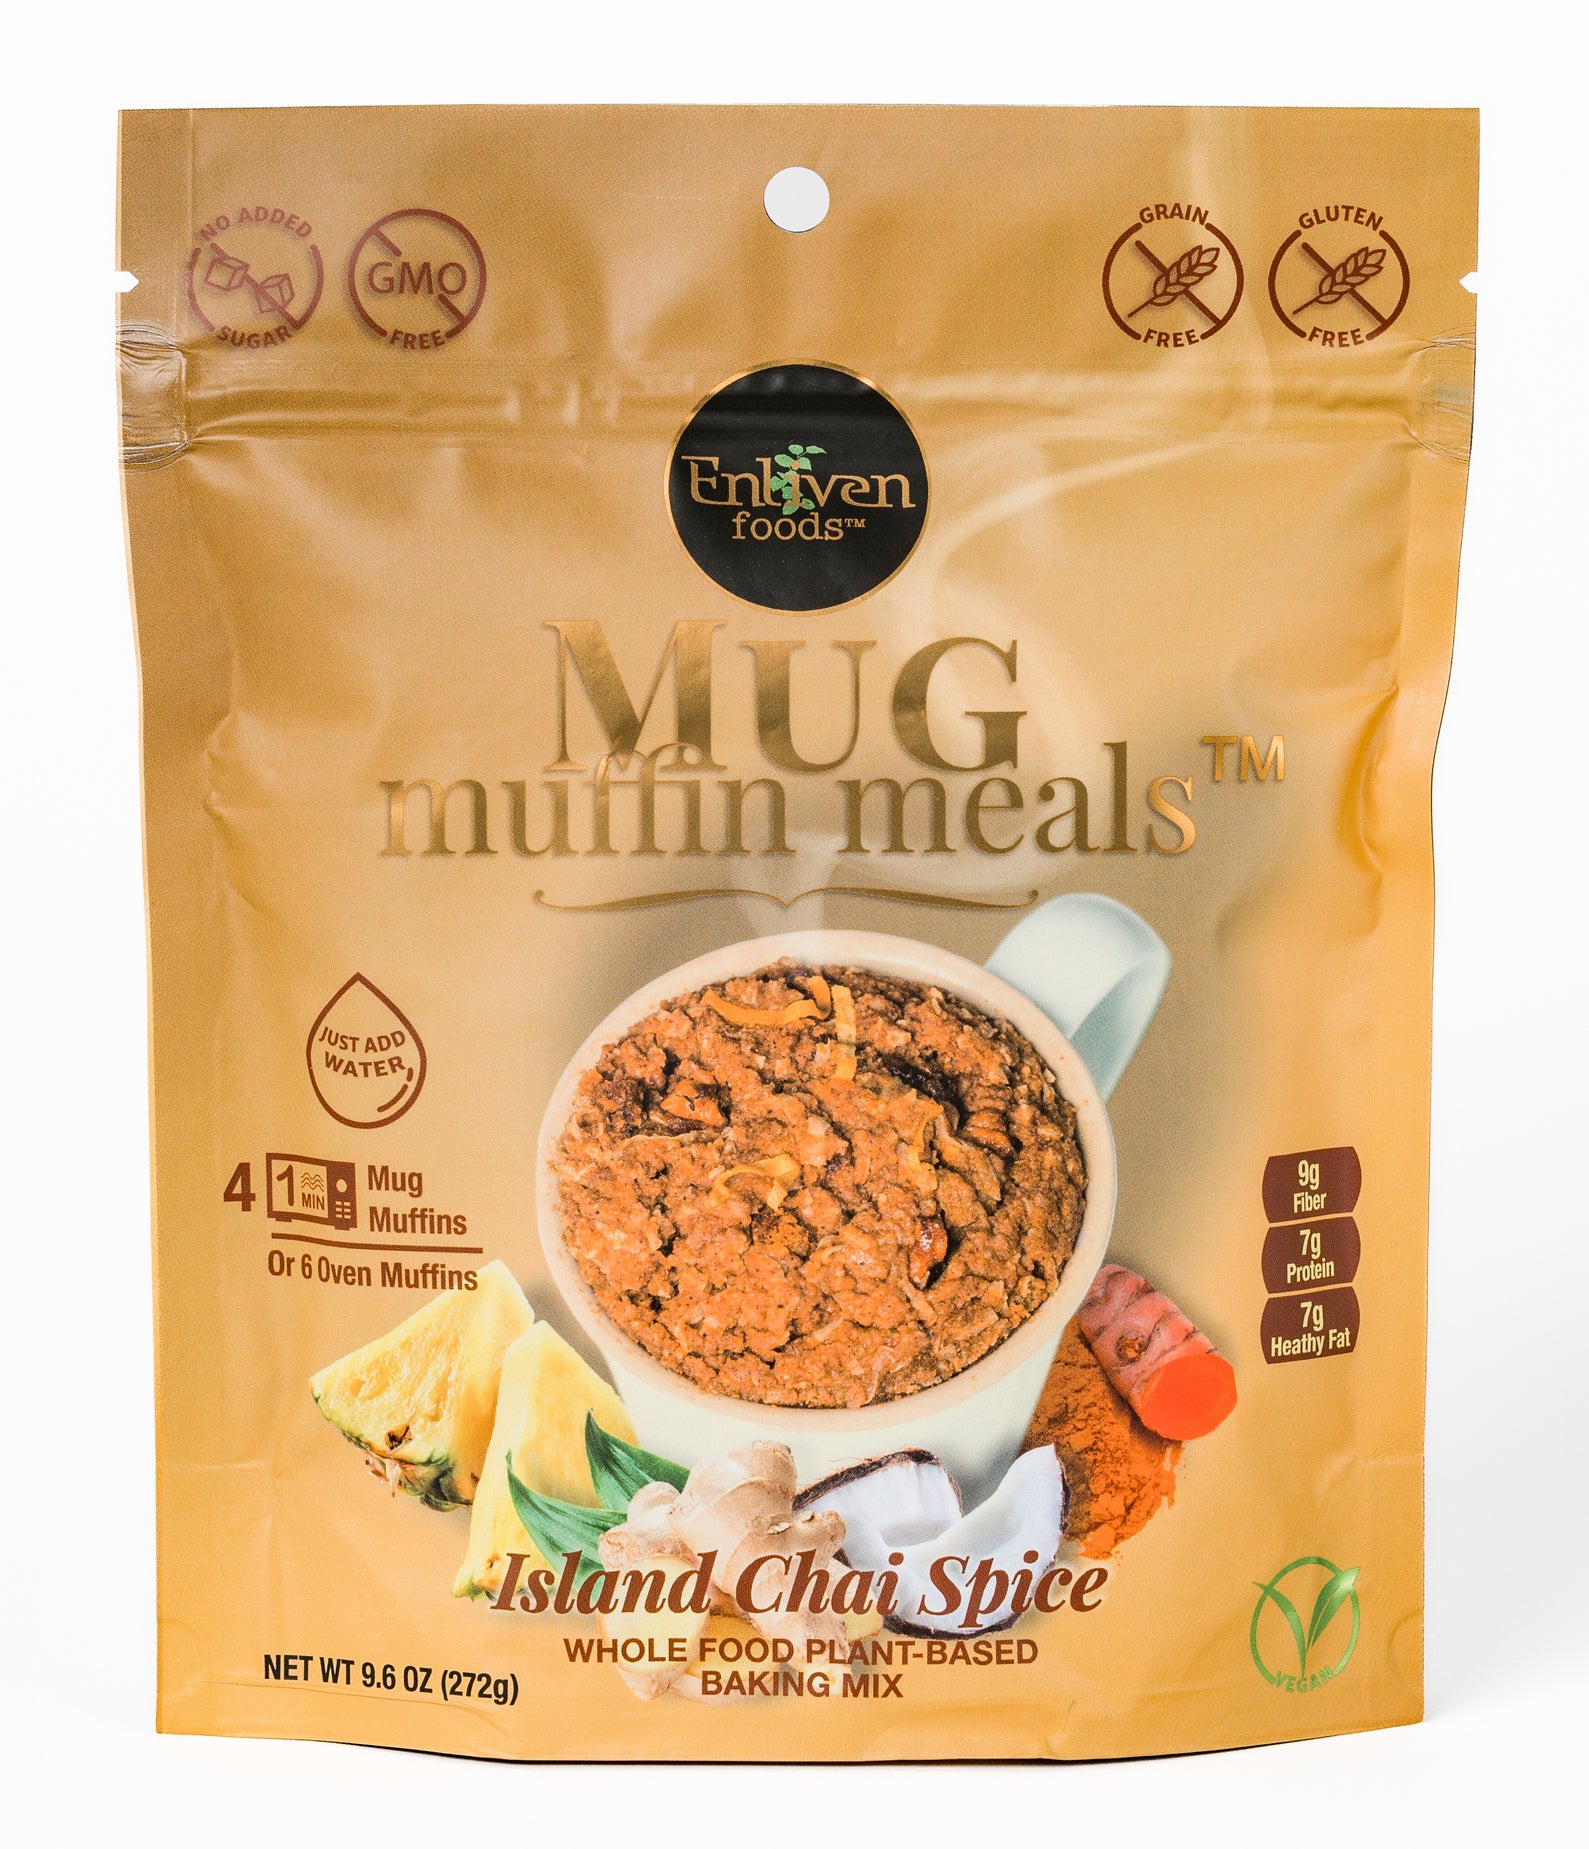 Island Chai Spice Mug Muffin Meals